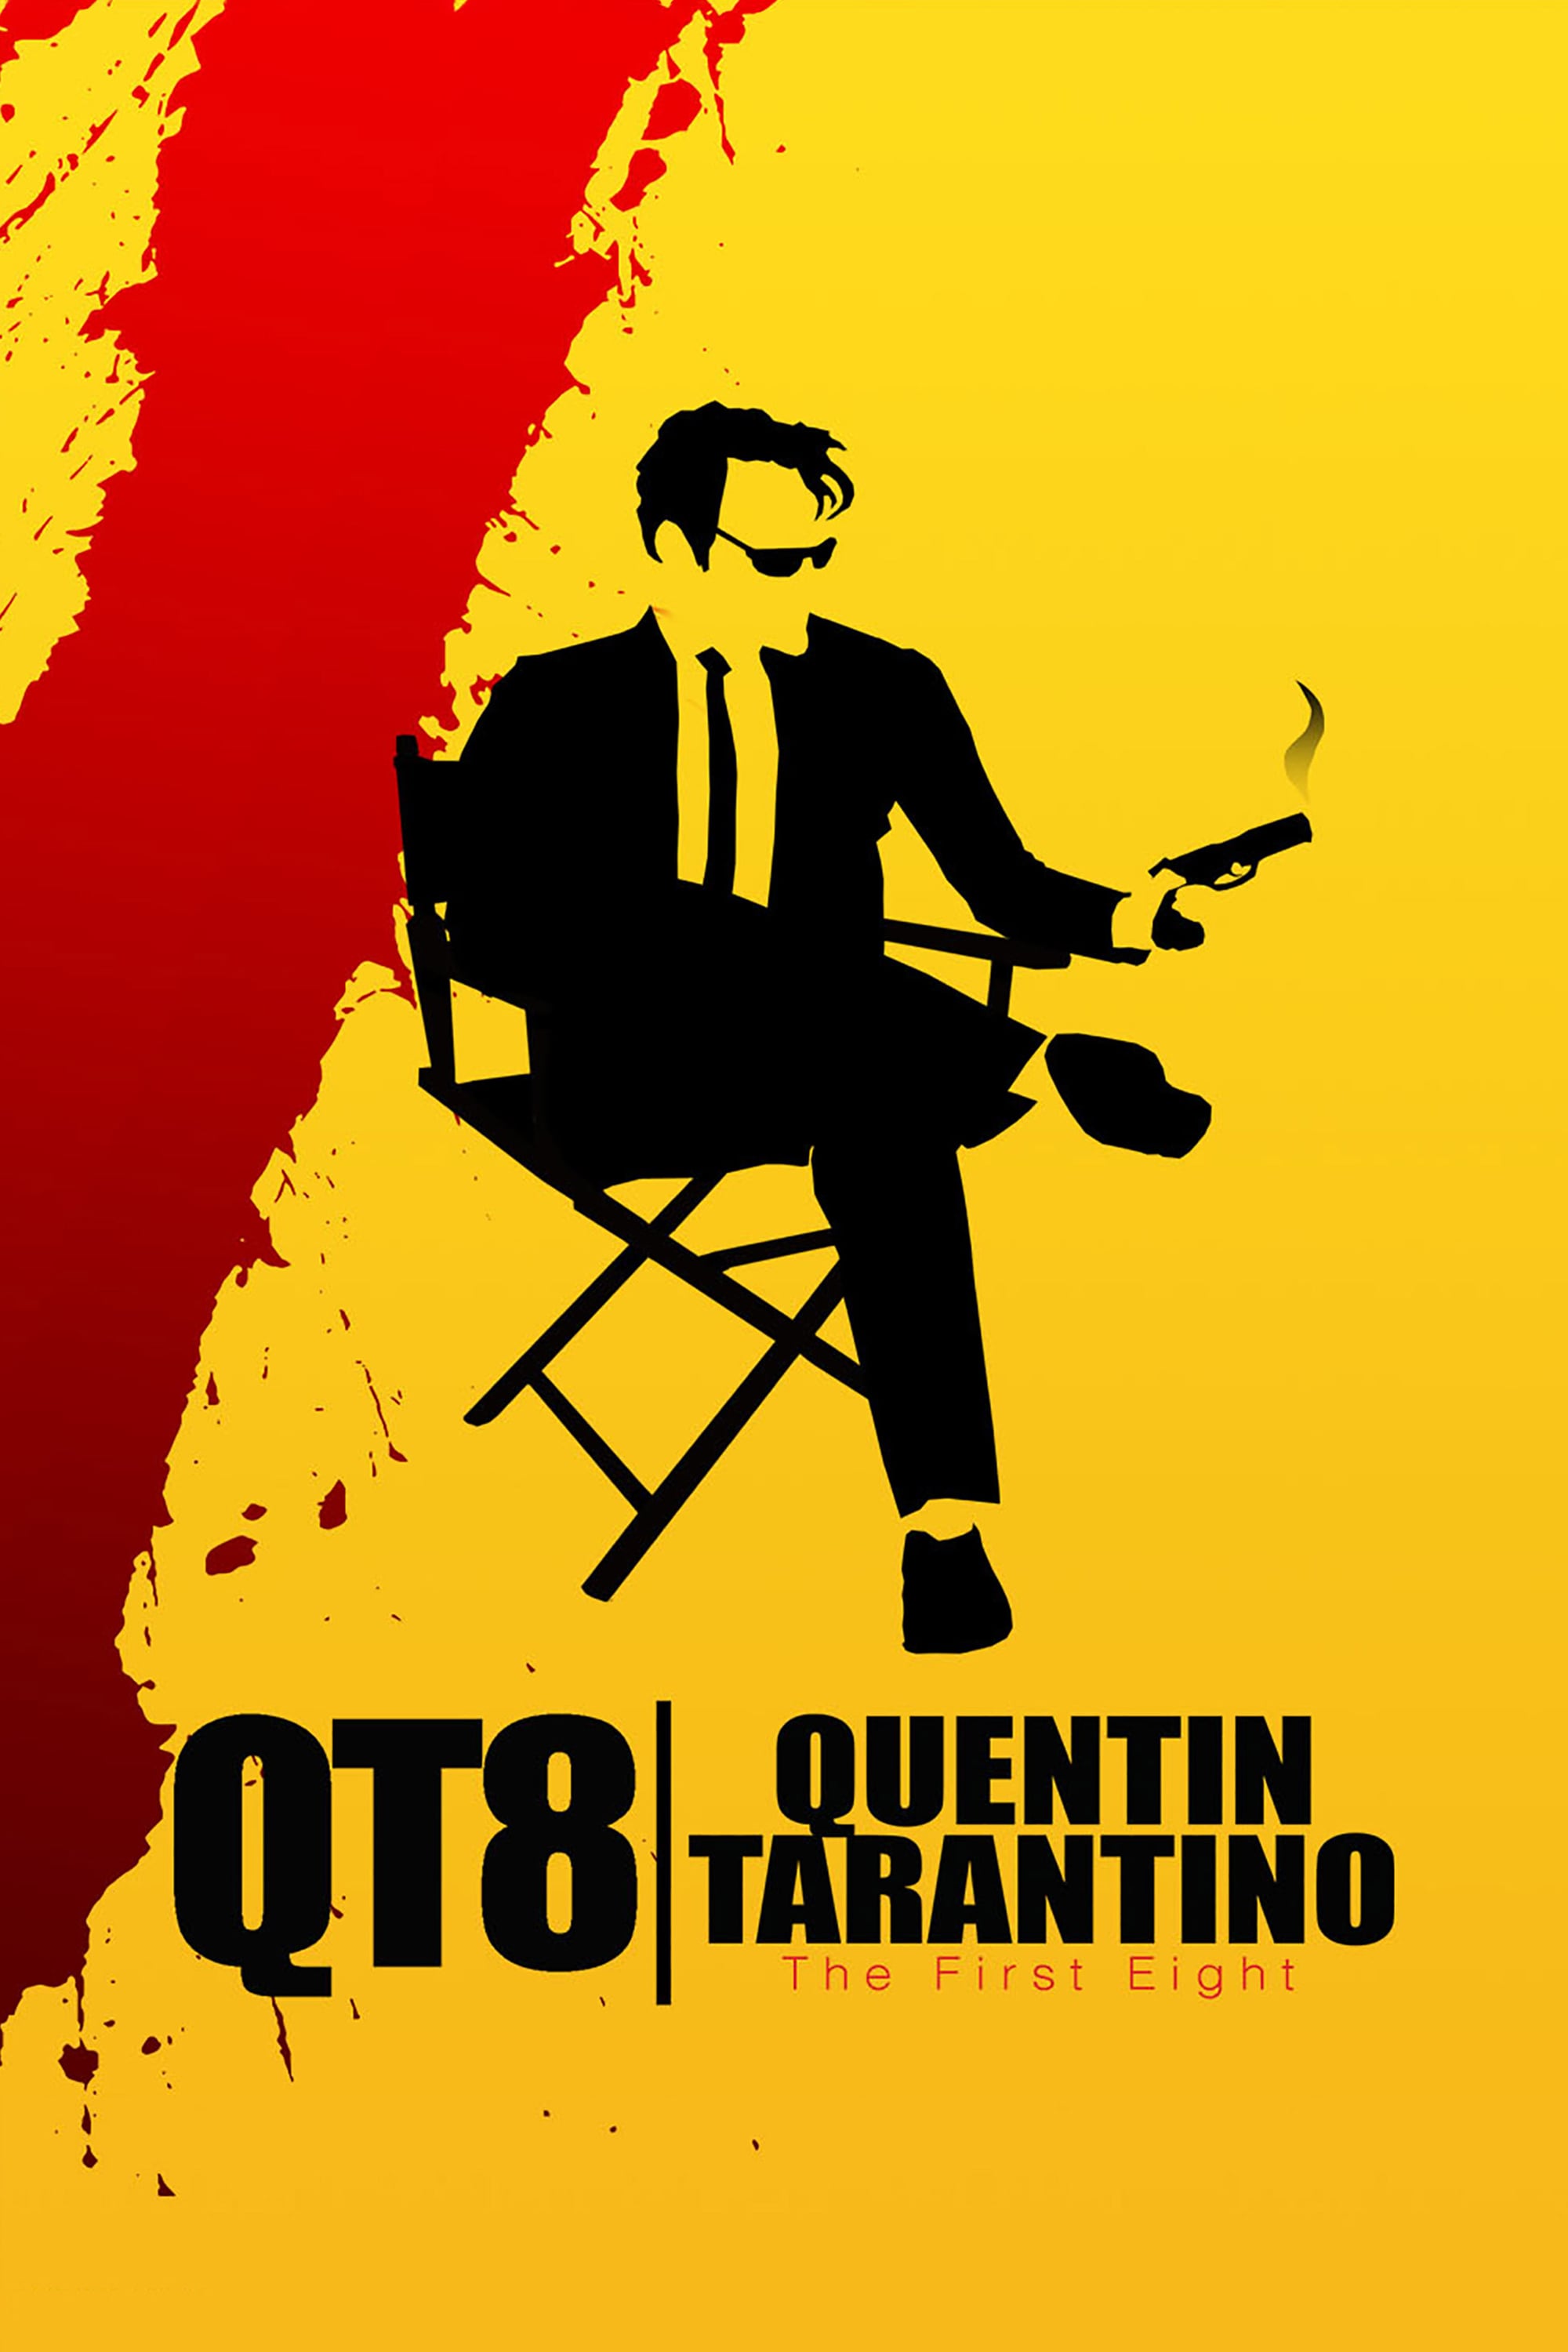 Tarantino, czyli tysiące filmów w głowie